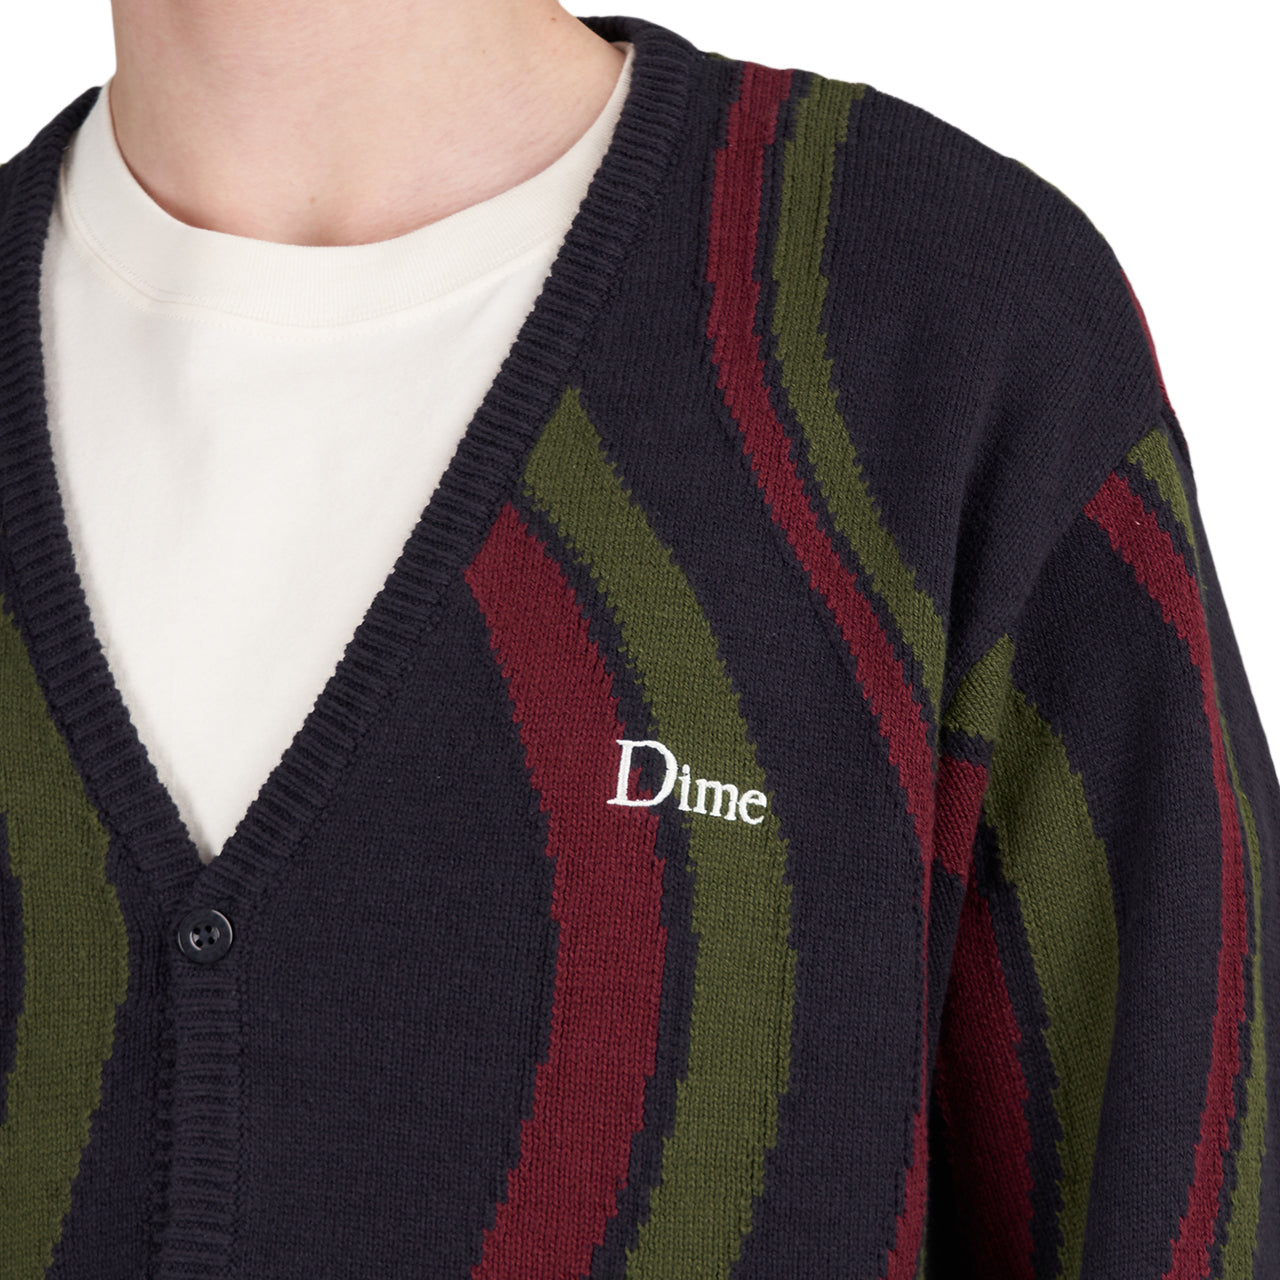 Dime Lightwave Knit Cardigan (Black / Green / Red)